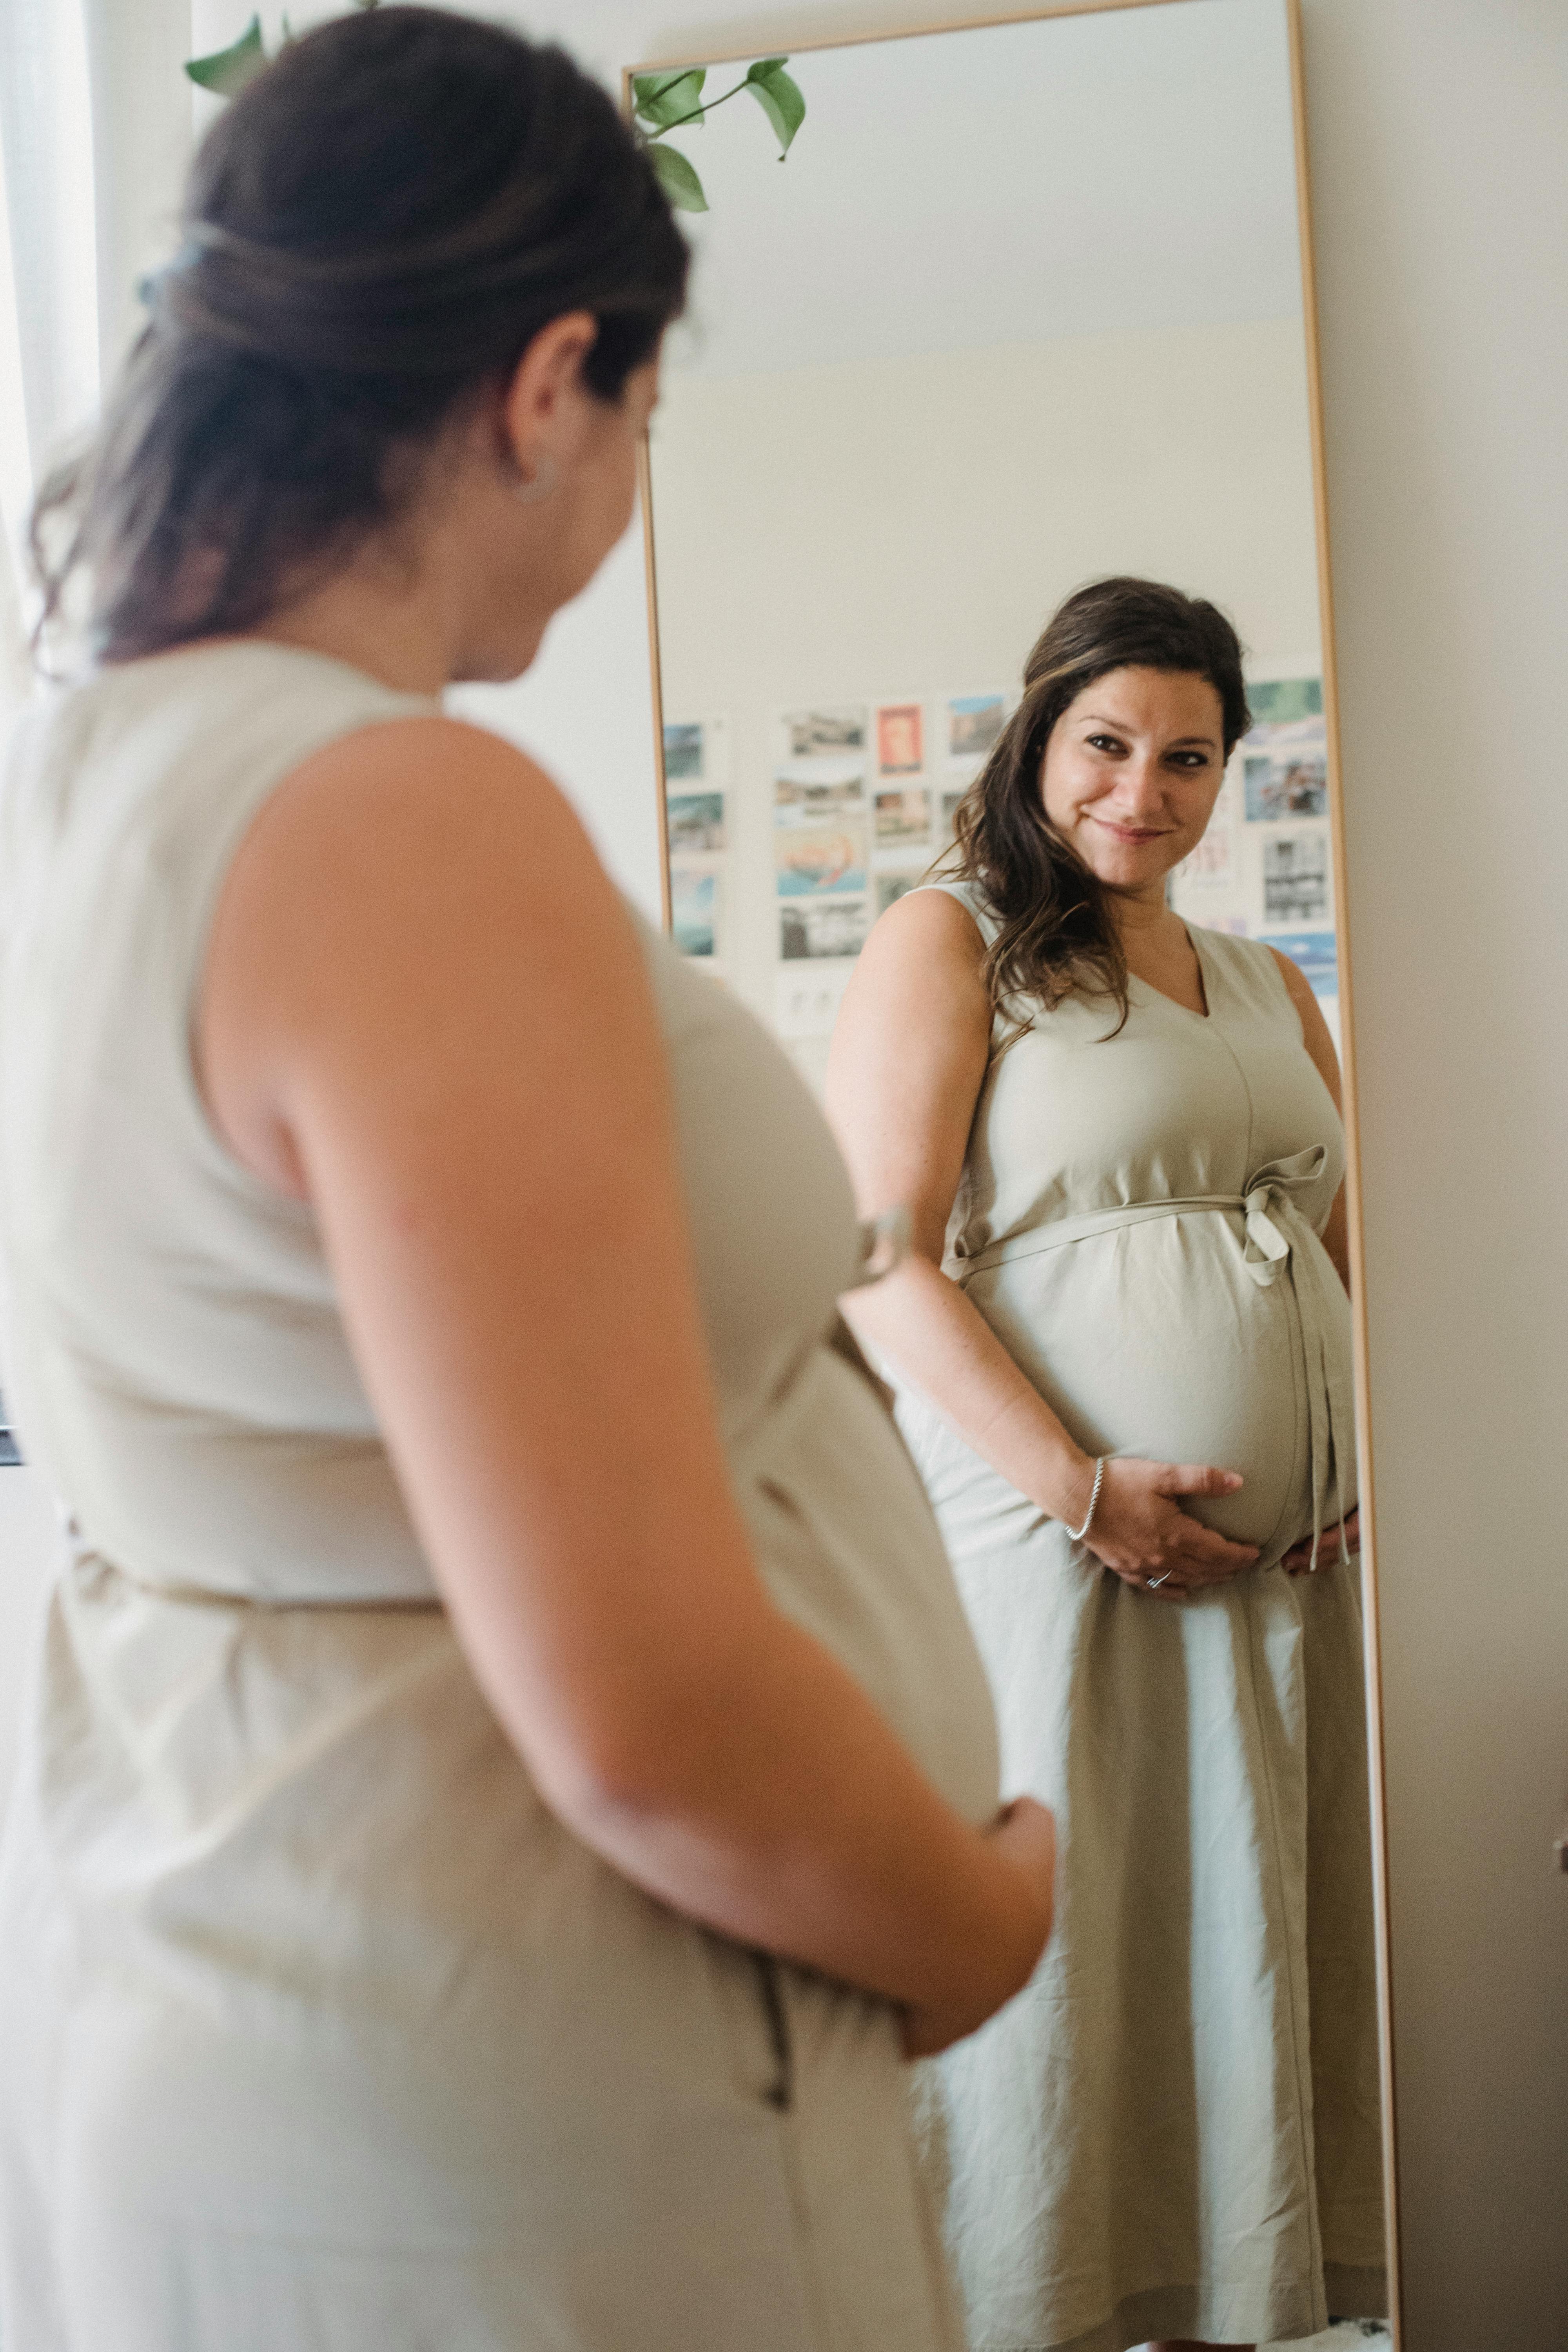 Una embarazada feliz mirándose en un espejo | Fuente: Pexels